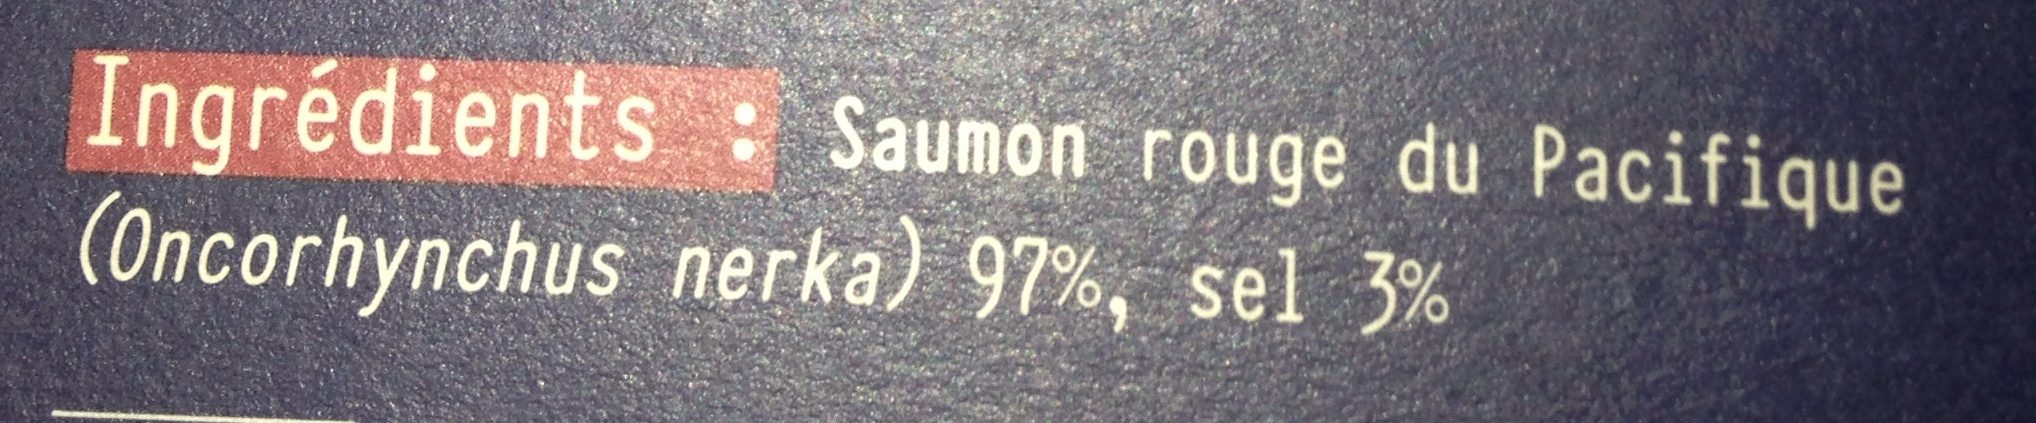 Saumon rouge du pacifique fumé ARMORIC, 5 petites tranches - Ingrediënten - fr